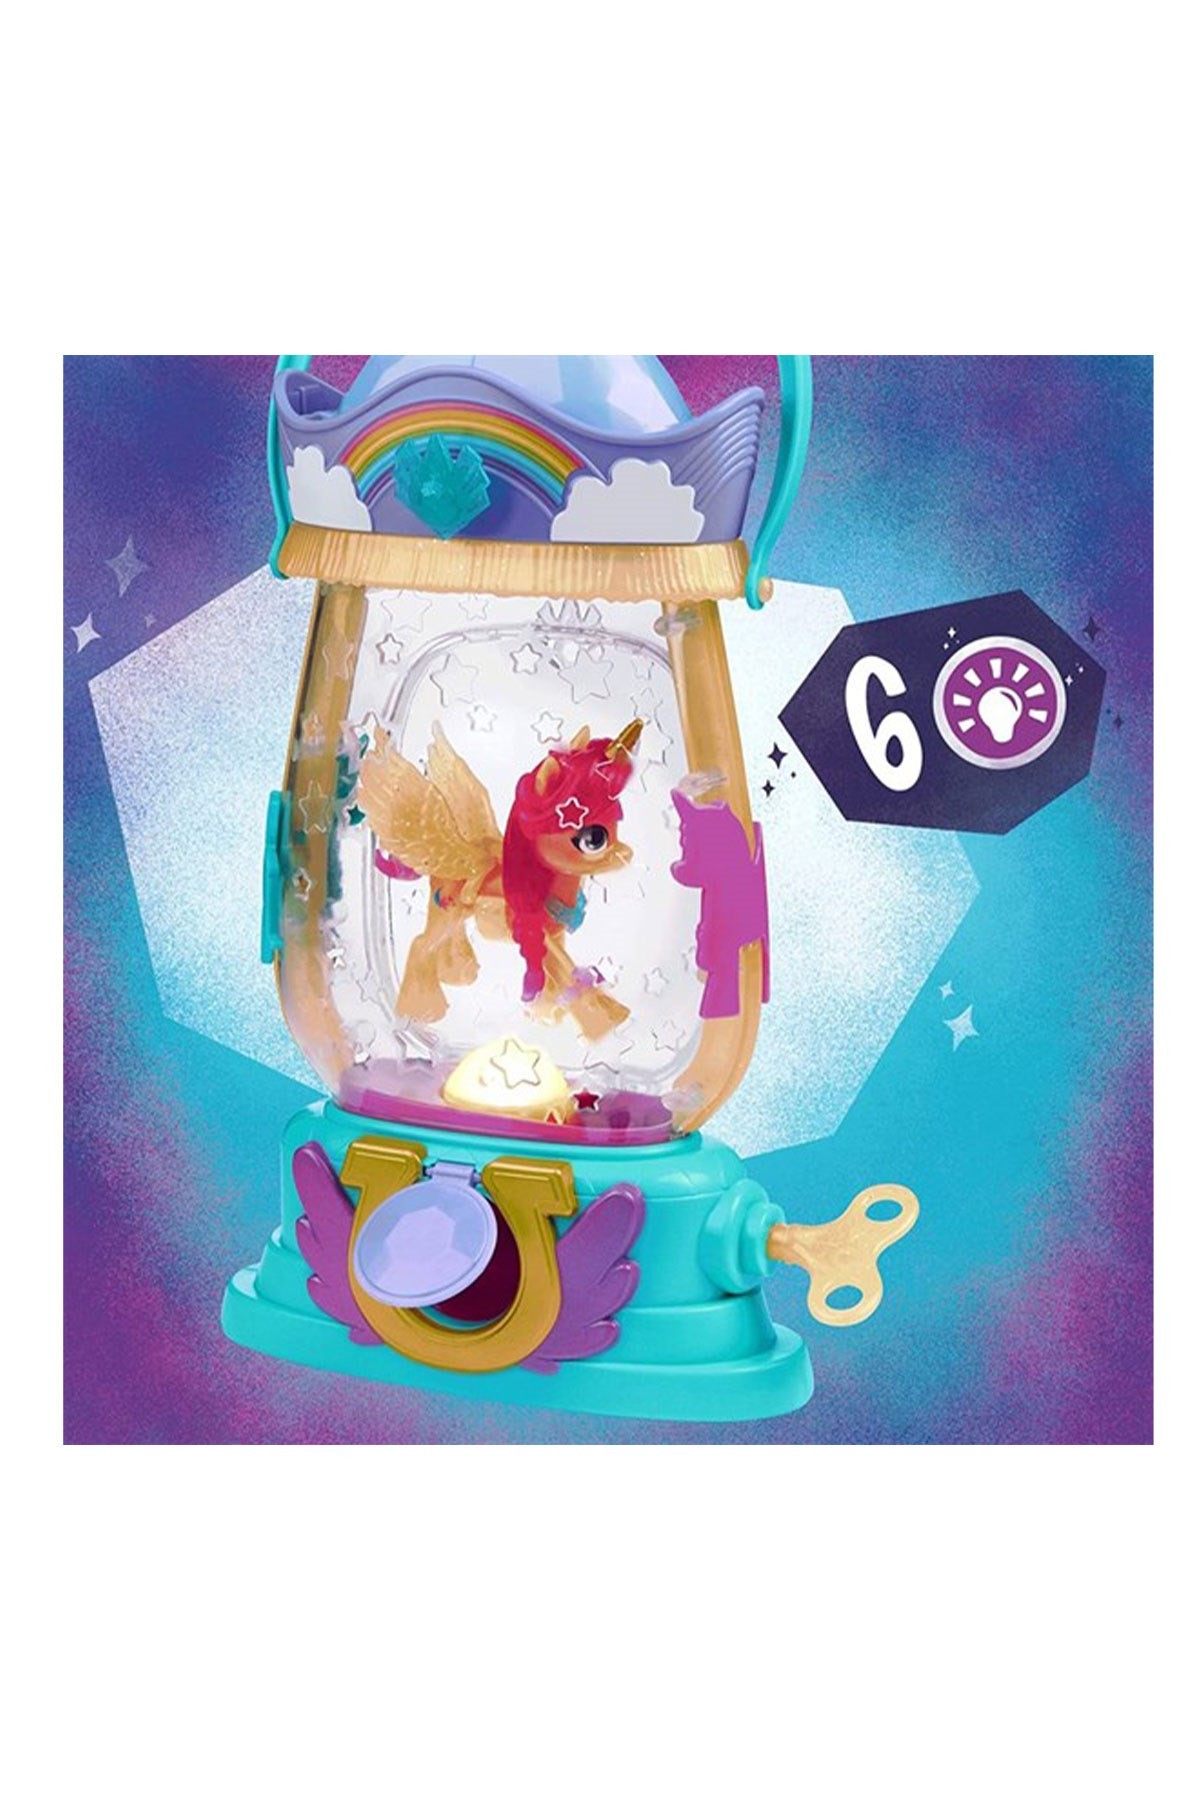 My Little Pony: Yeni Bir Nesil Sunny Starscout'un Sihirli Feneri